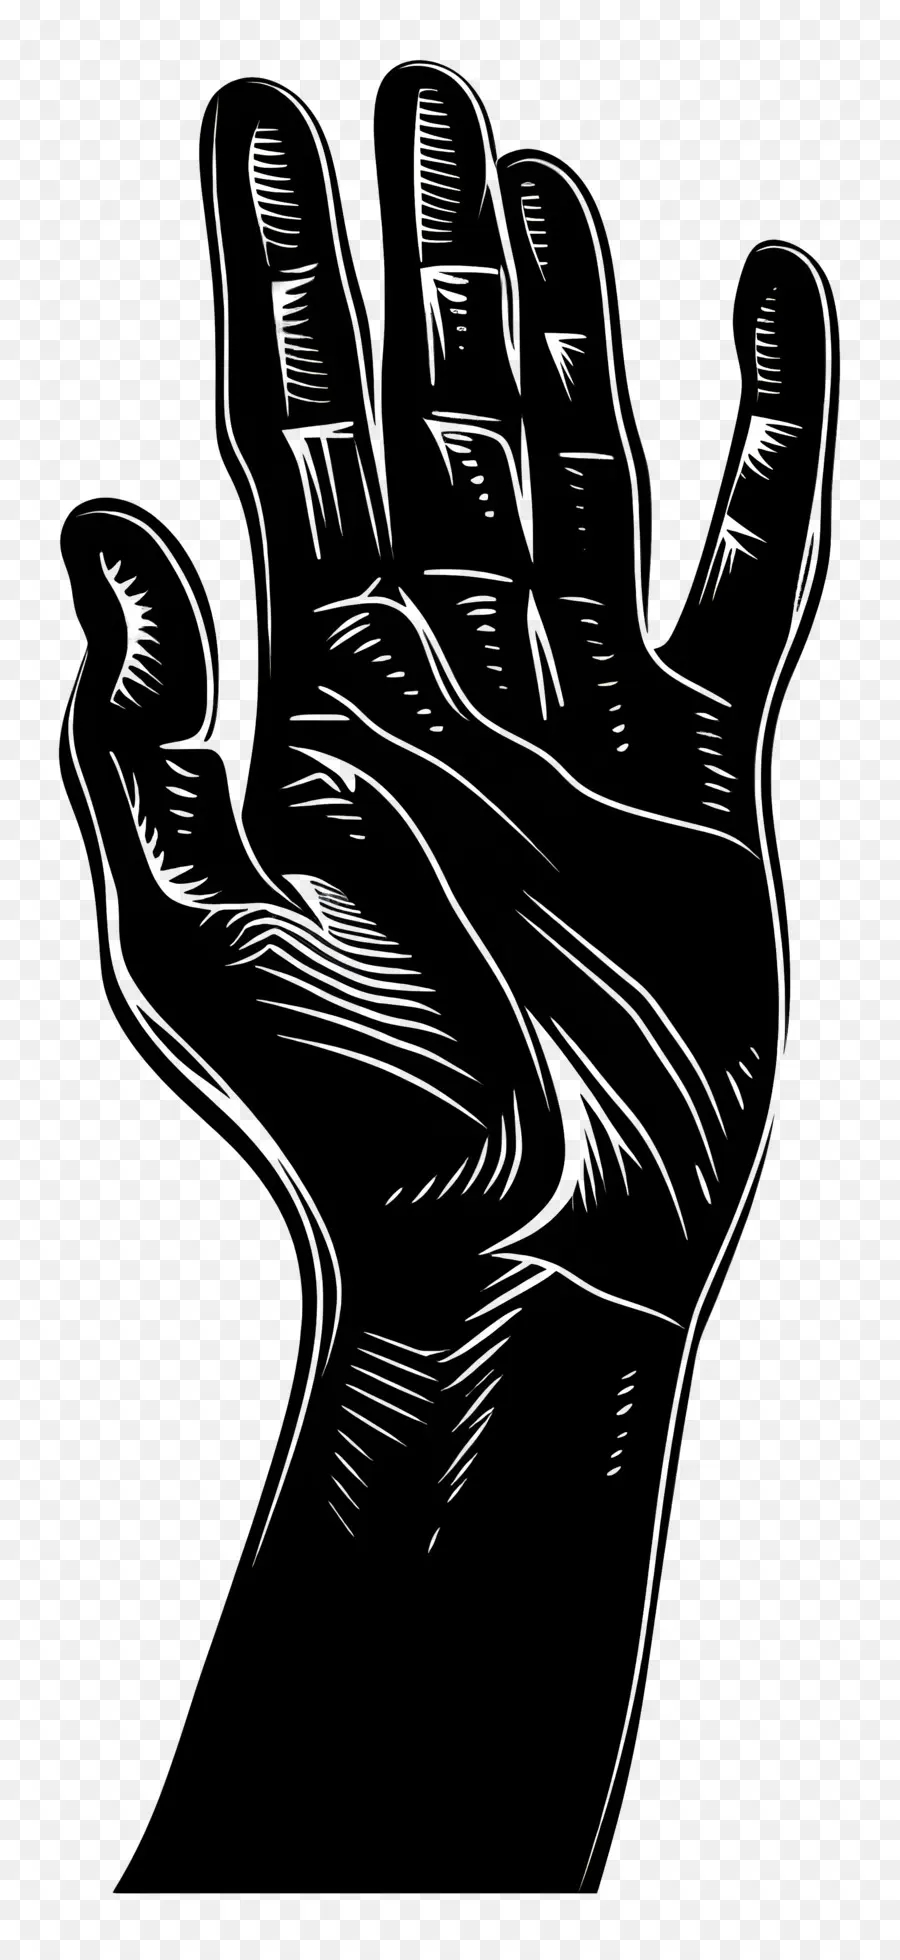 Geste dehnende Handbewegung erreicht - Unheimliche schwarze Hand Hand greift aus